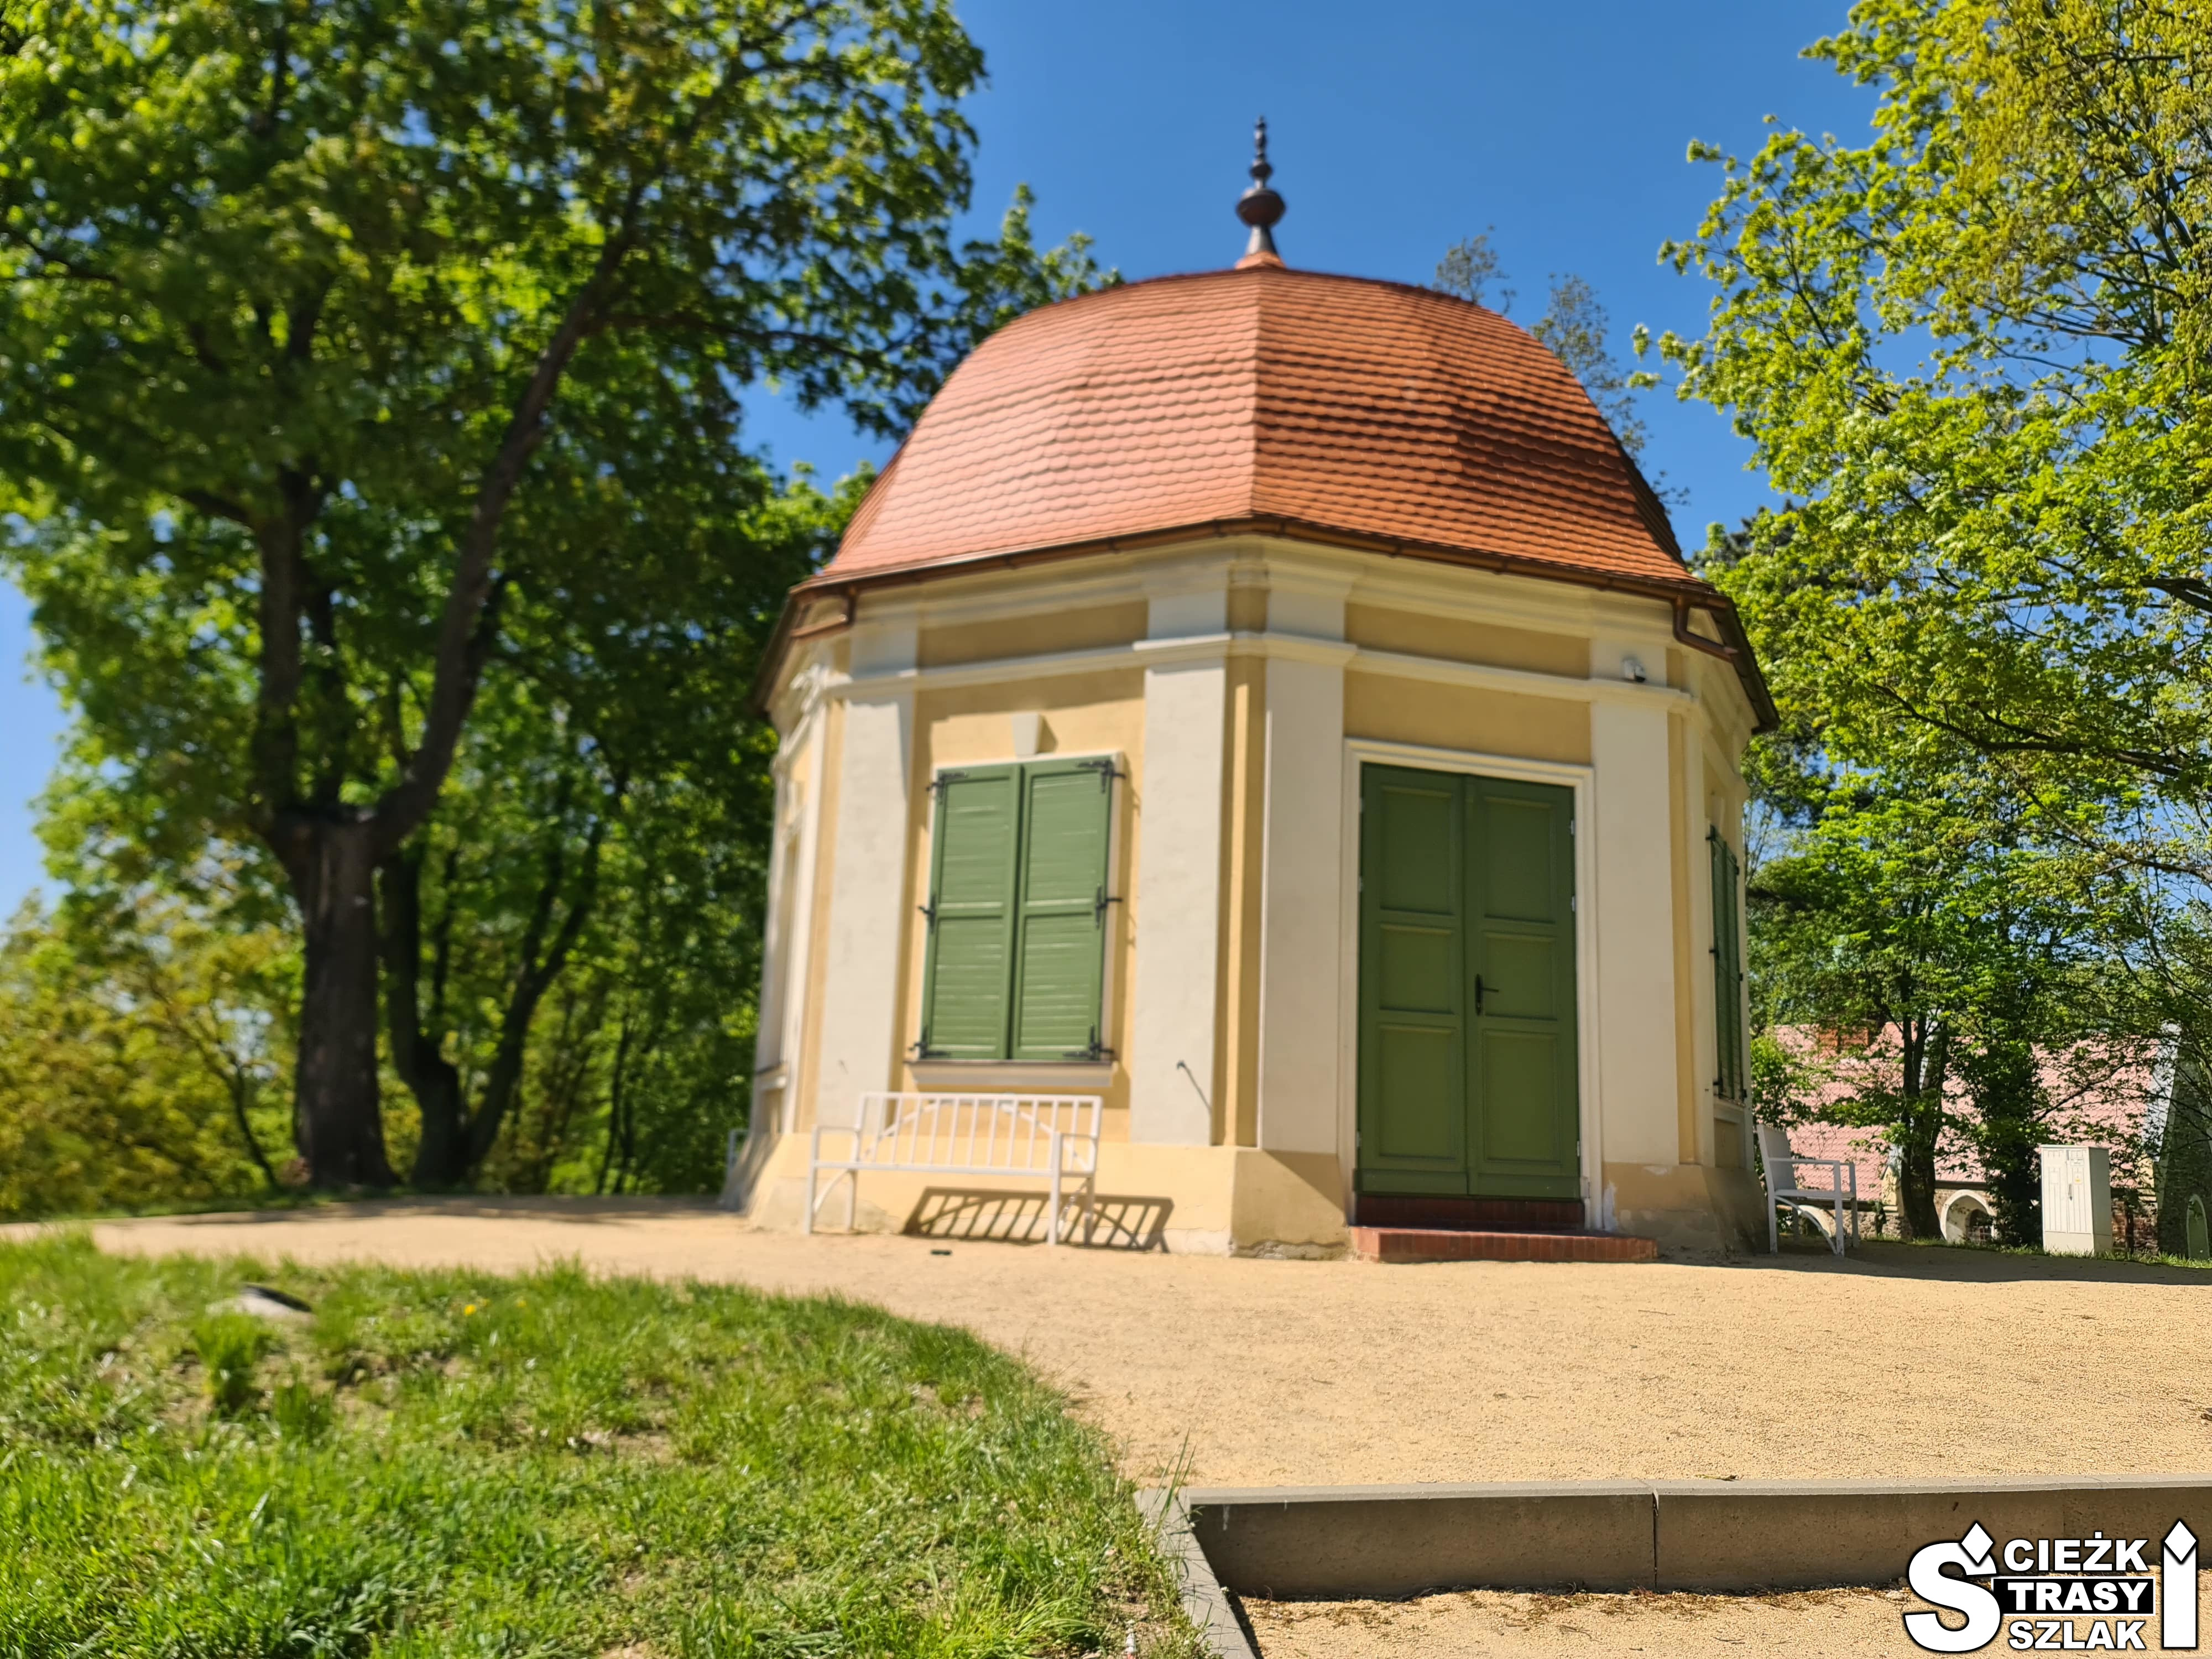 Mały domek na planie sześciokąta z zielonymi okiennicami i drzwiami w zespole zamkowo-pałacowym w Żarach - Domek Winny